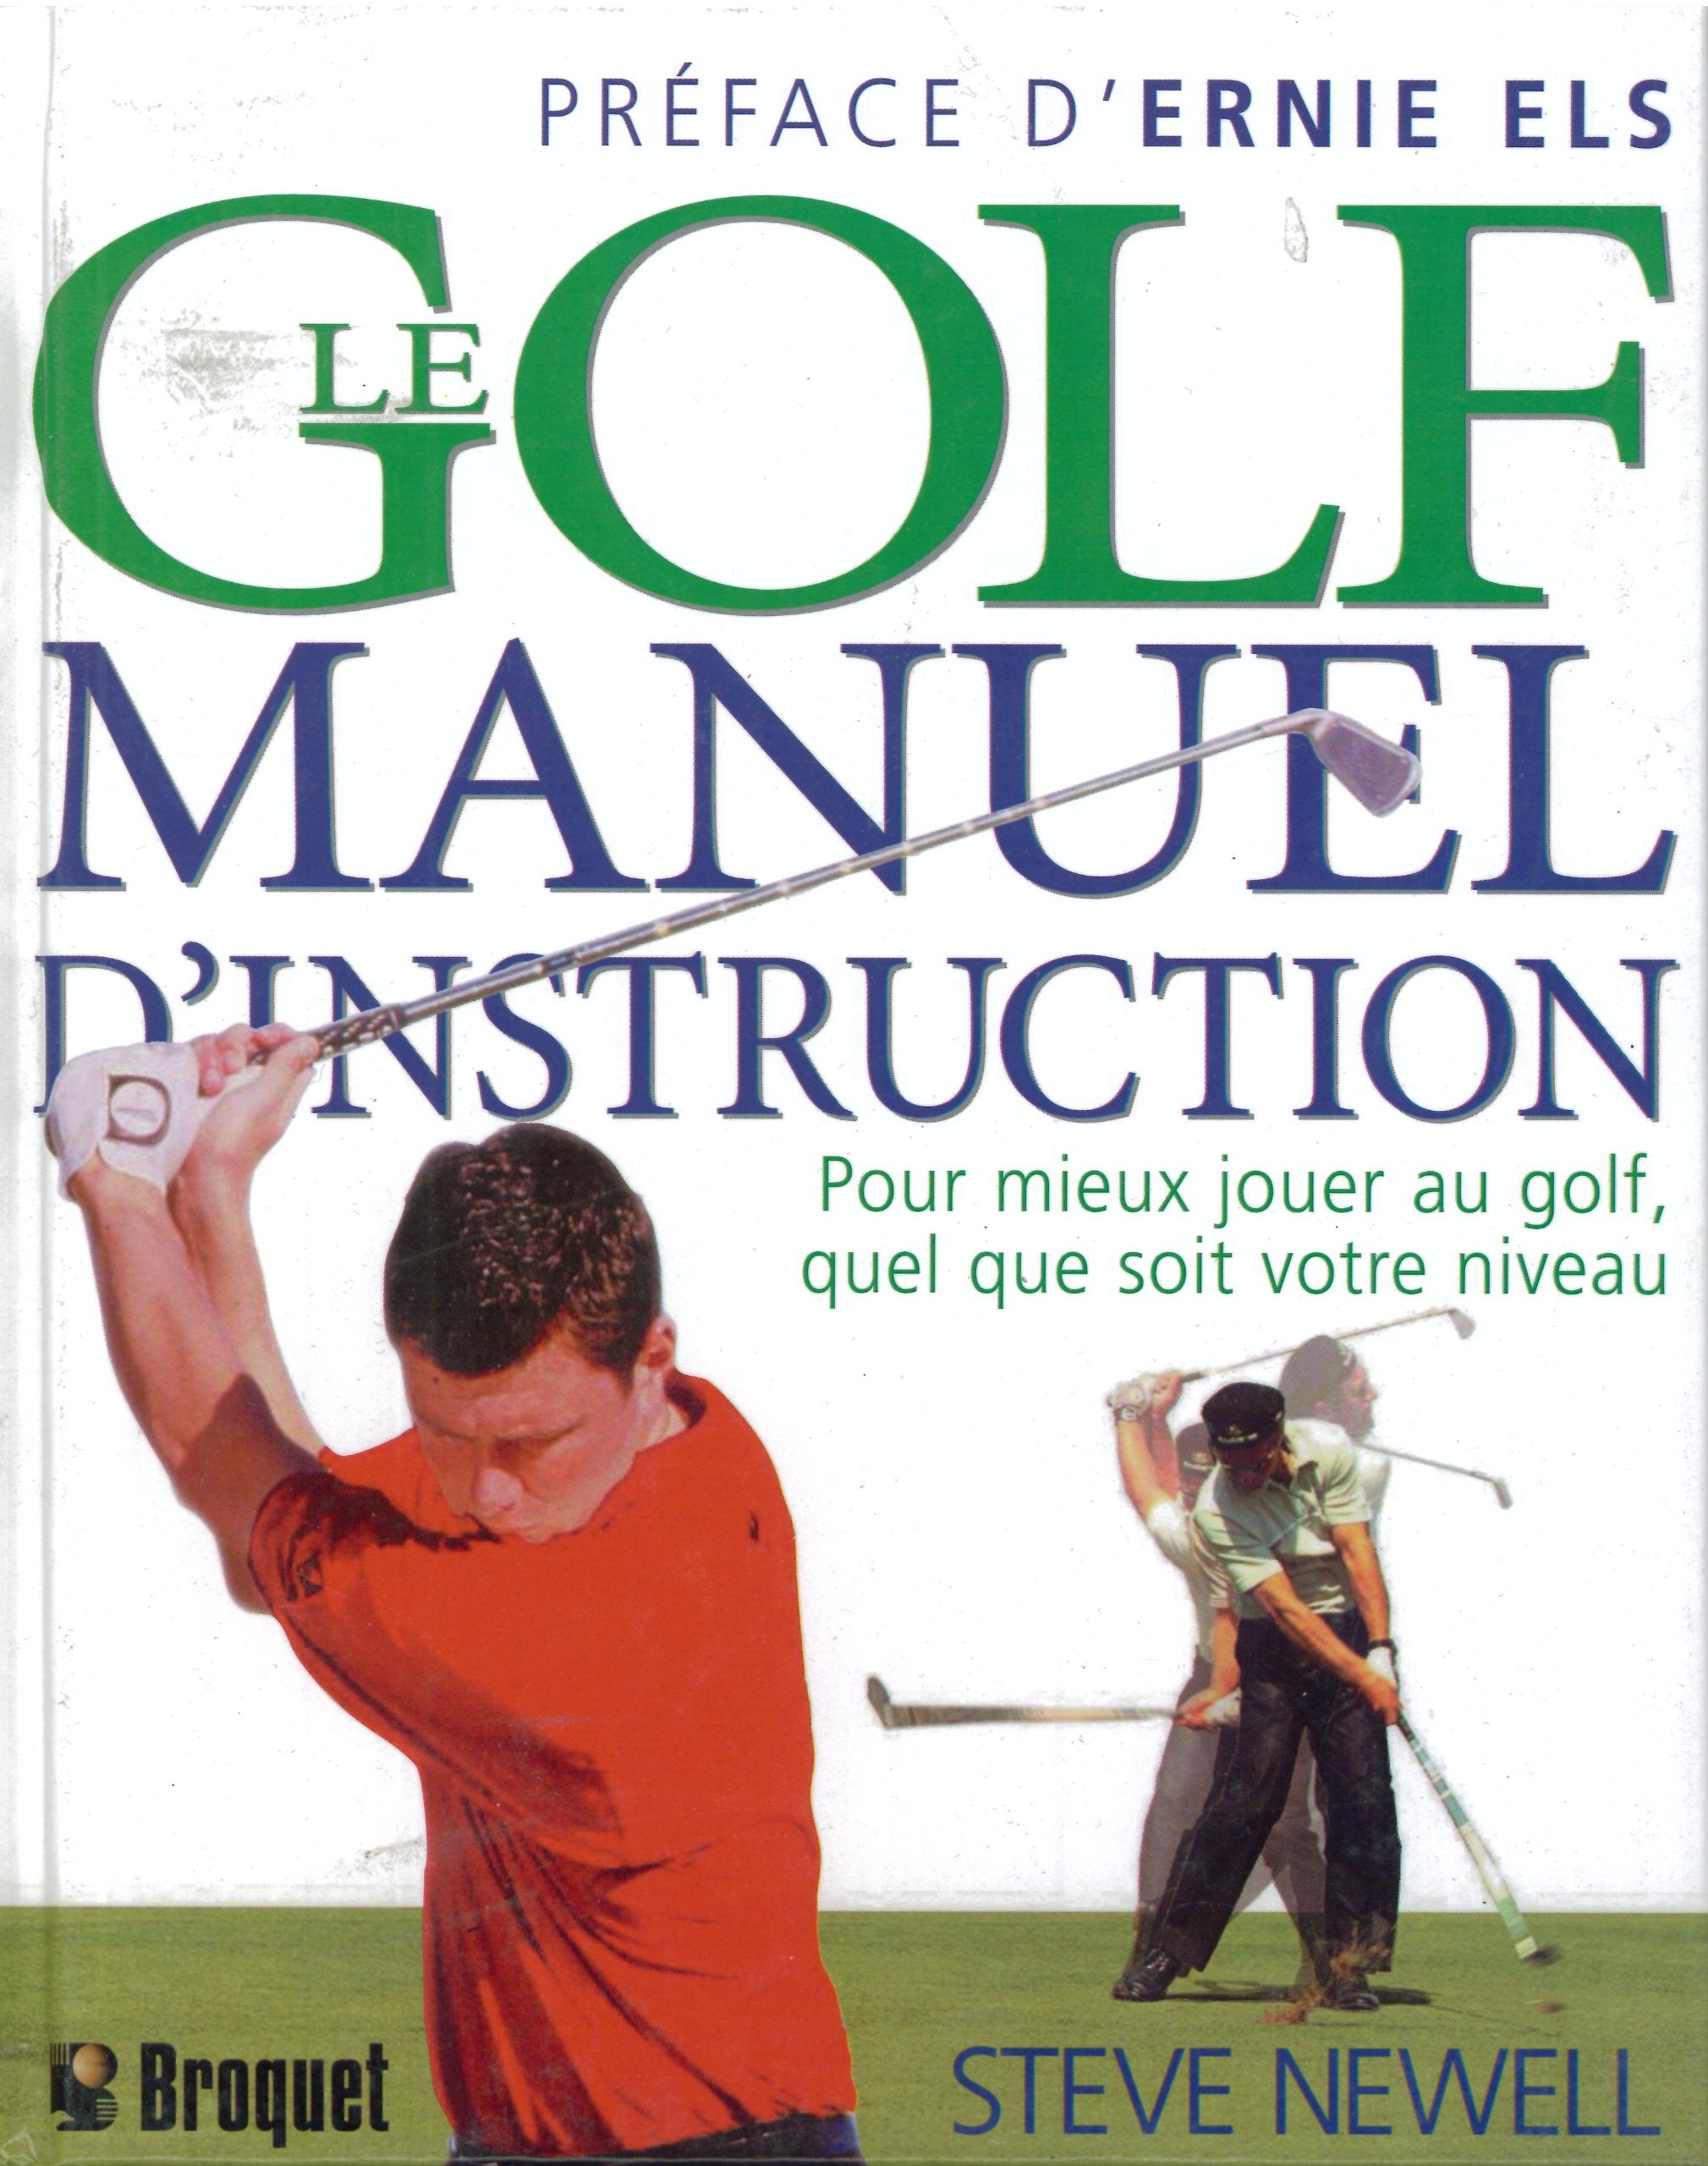 Le Golf : Manuel d'instruction - Pour mieux jouer au golf, quel que soit votre niveau - Steve Newell